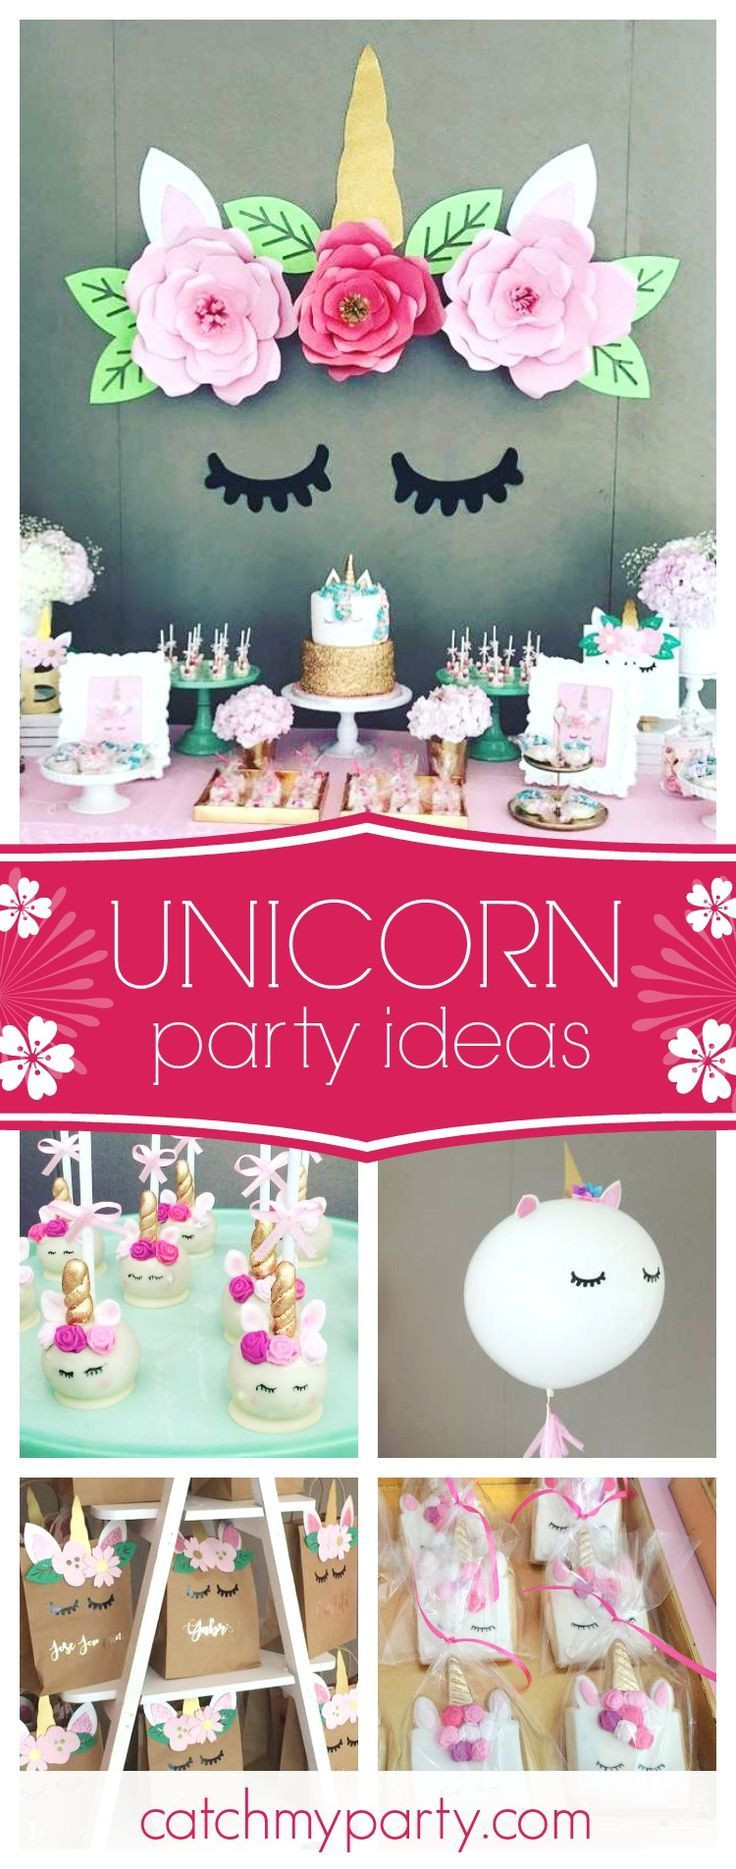 Diy Unicorn Party Ideas
 Best 25 Unicorn birthday parties ideas on Pinterest